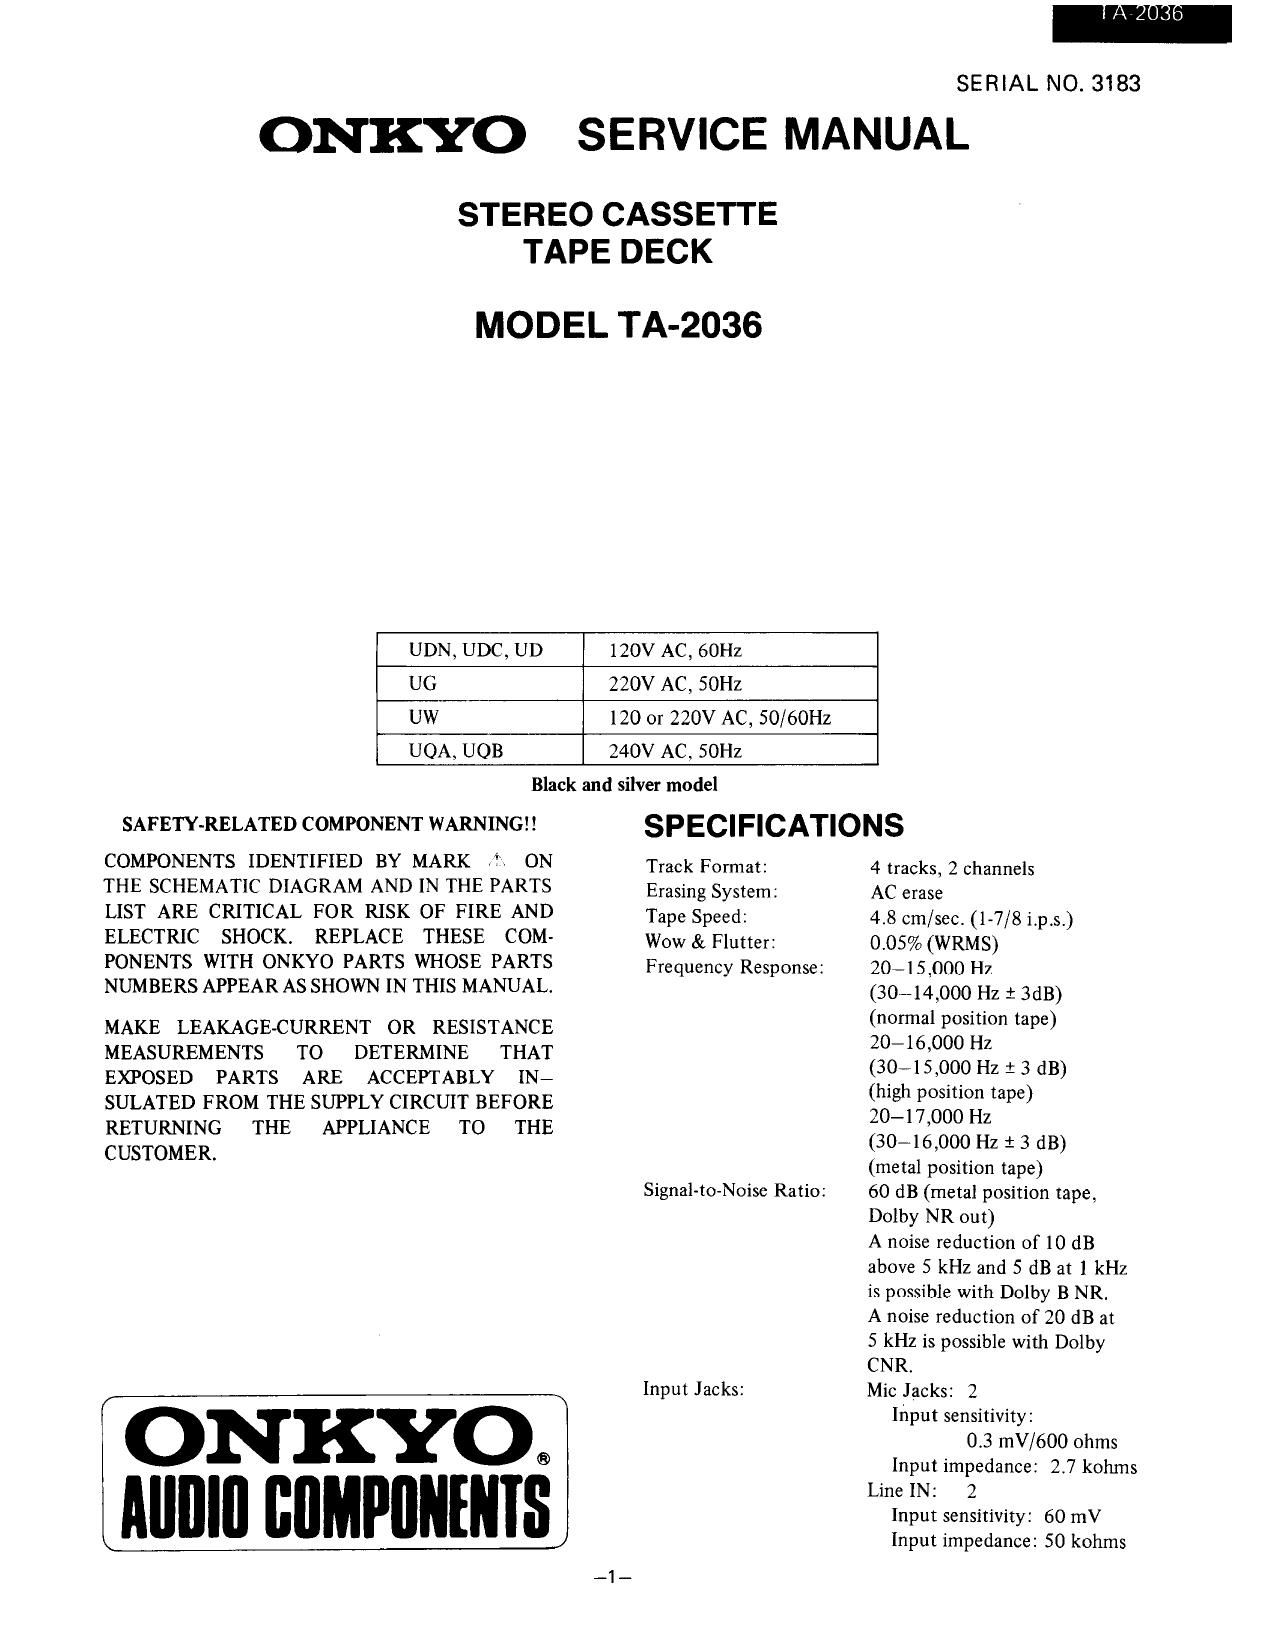 Onkyo TA 2036 Service Manual